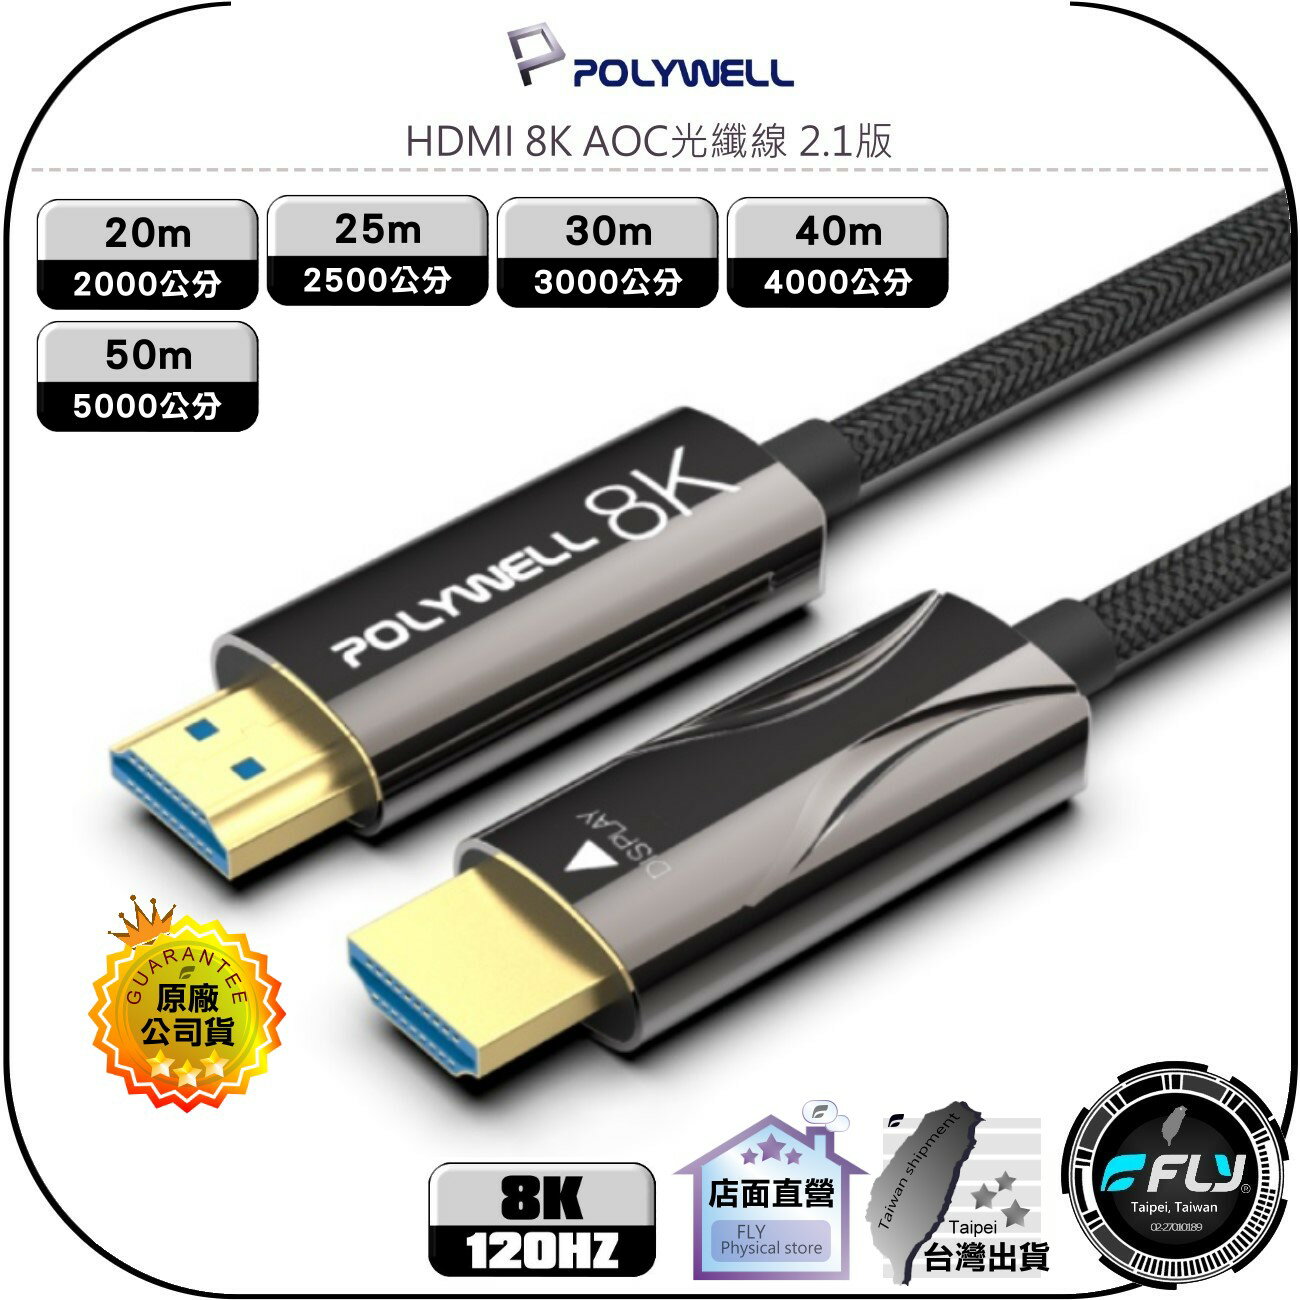 【飛翔商城】POLYWELL 寶利威爾 HDMI 8K AOC光纖線◉影音傳輸◉20m/25m/30m/40m/50m